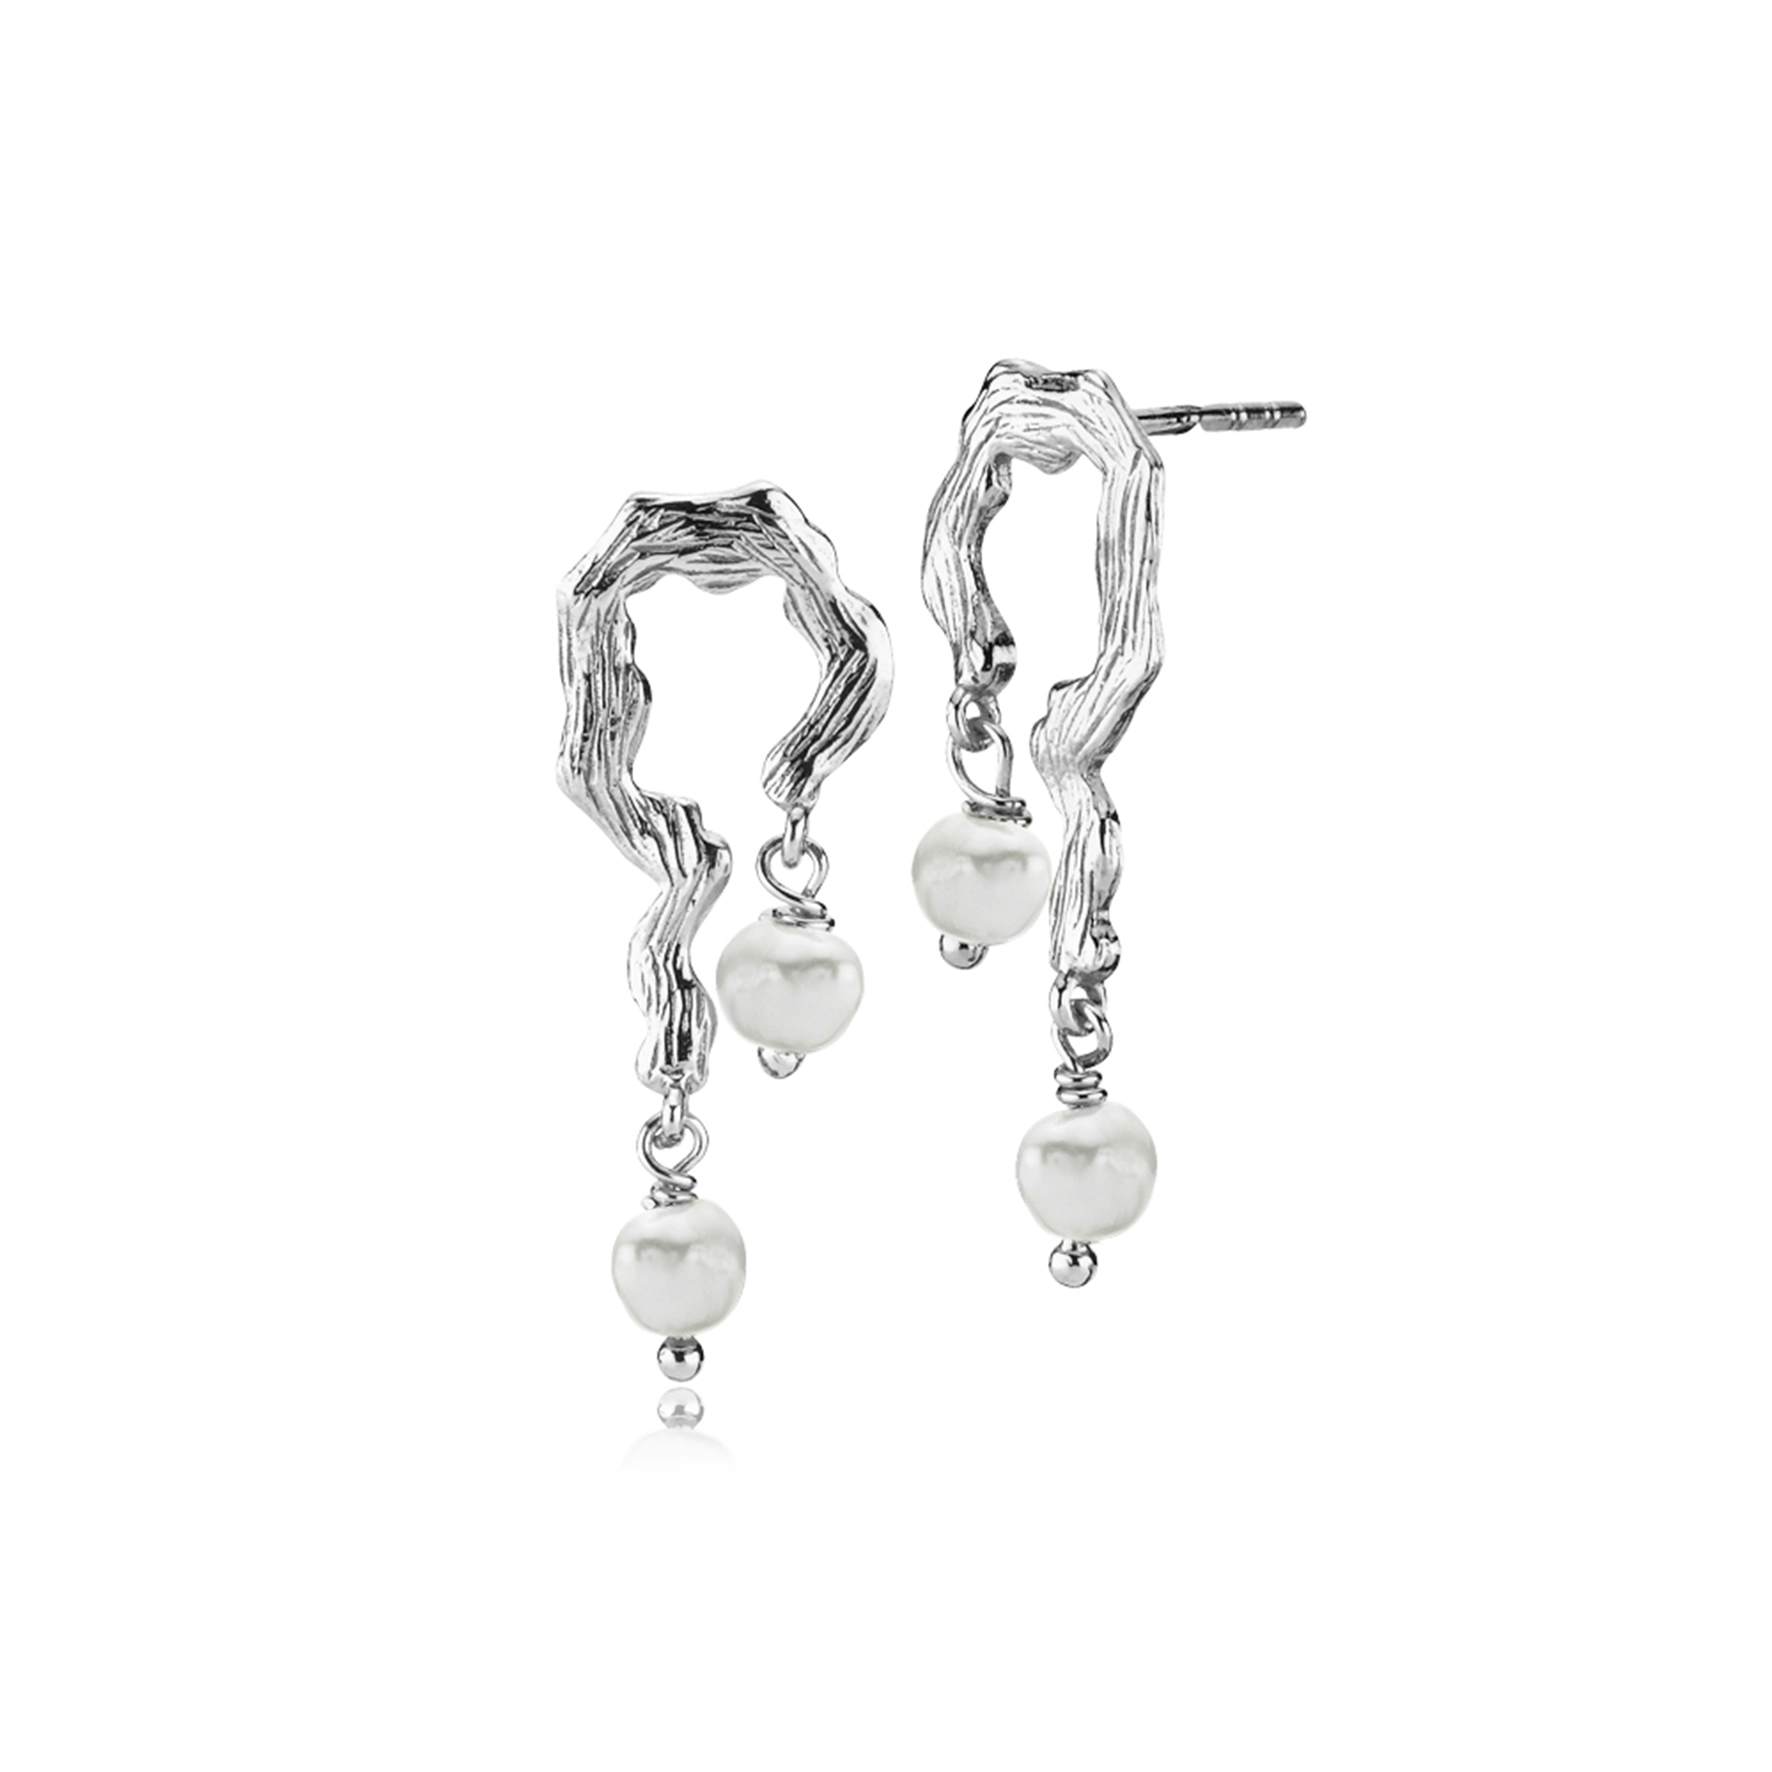 Lærke Bentsen By Sistie Earrings With Pearls von Sistie in Silber Sterling 925